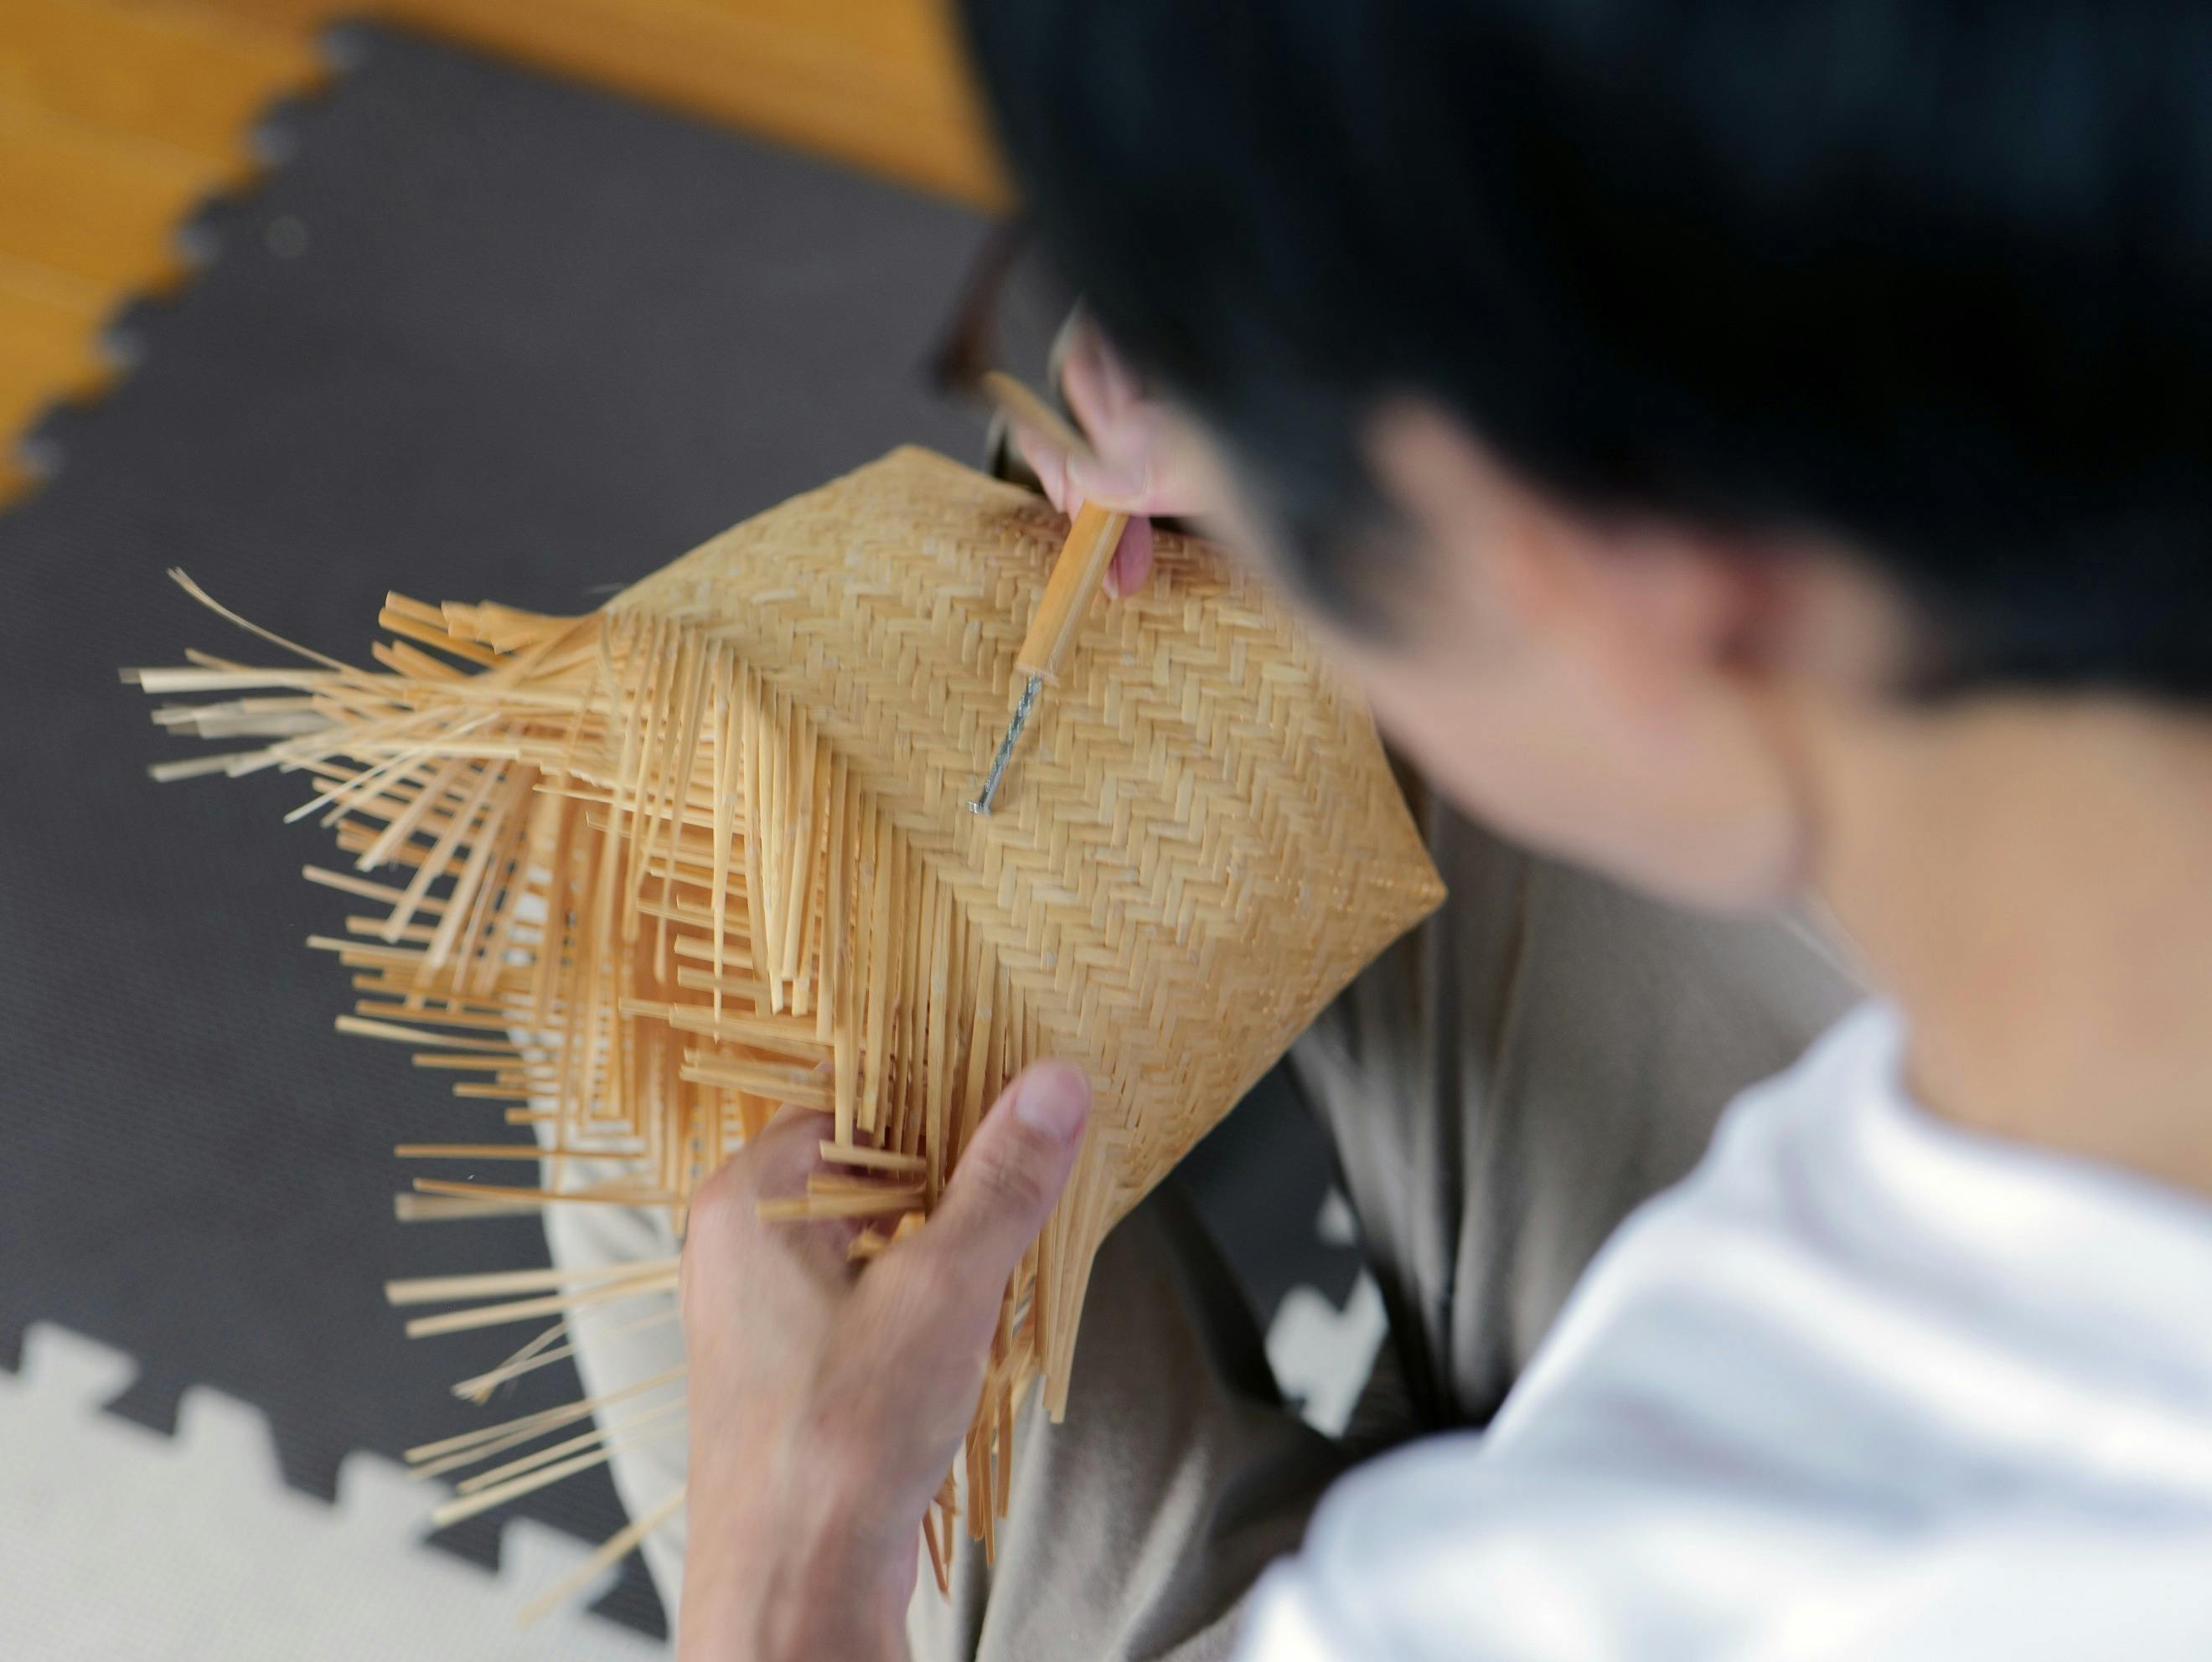 かごを編む 鳥越のすず竹細工と共に・柴田恵 - CAMPFIRE (キャンプ